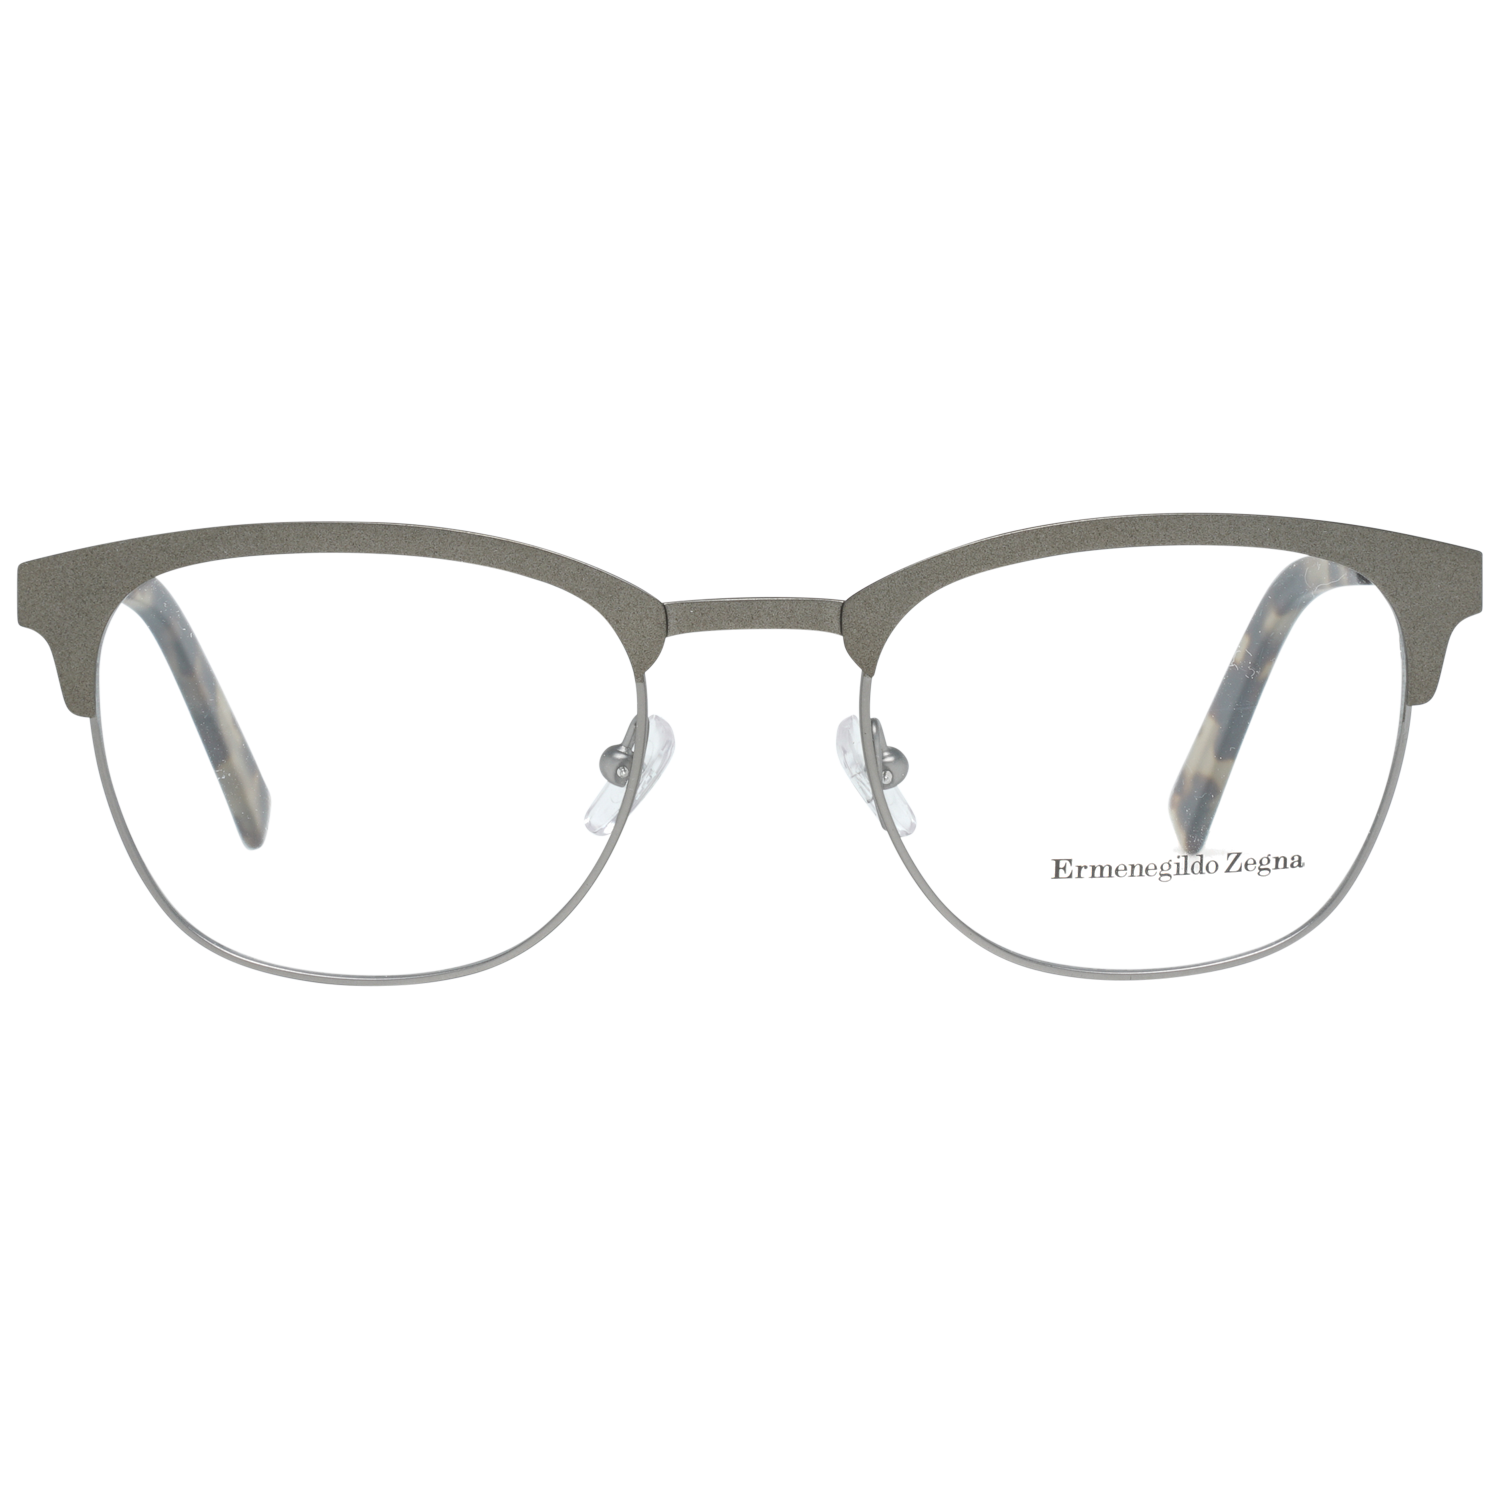 Ermenegildo Zegna Frames Ermenegildo Zegna Glasses Optical Frame EZ5099 097 50 Eyeglasses Eyewear UK USA Australia 